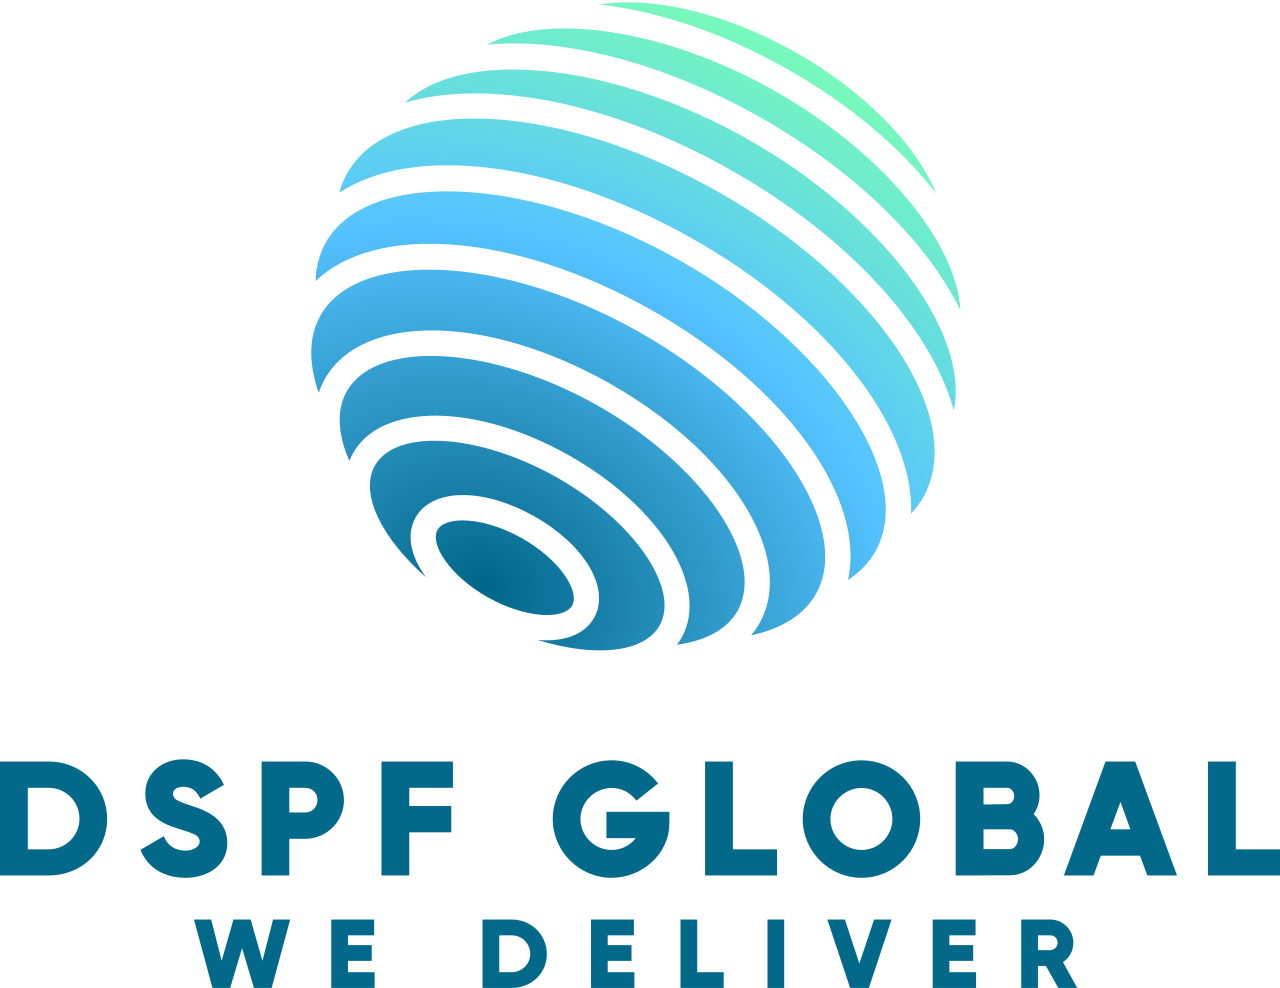 DSPF Global's logo